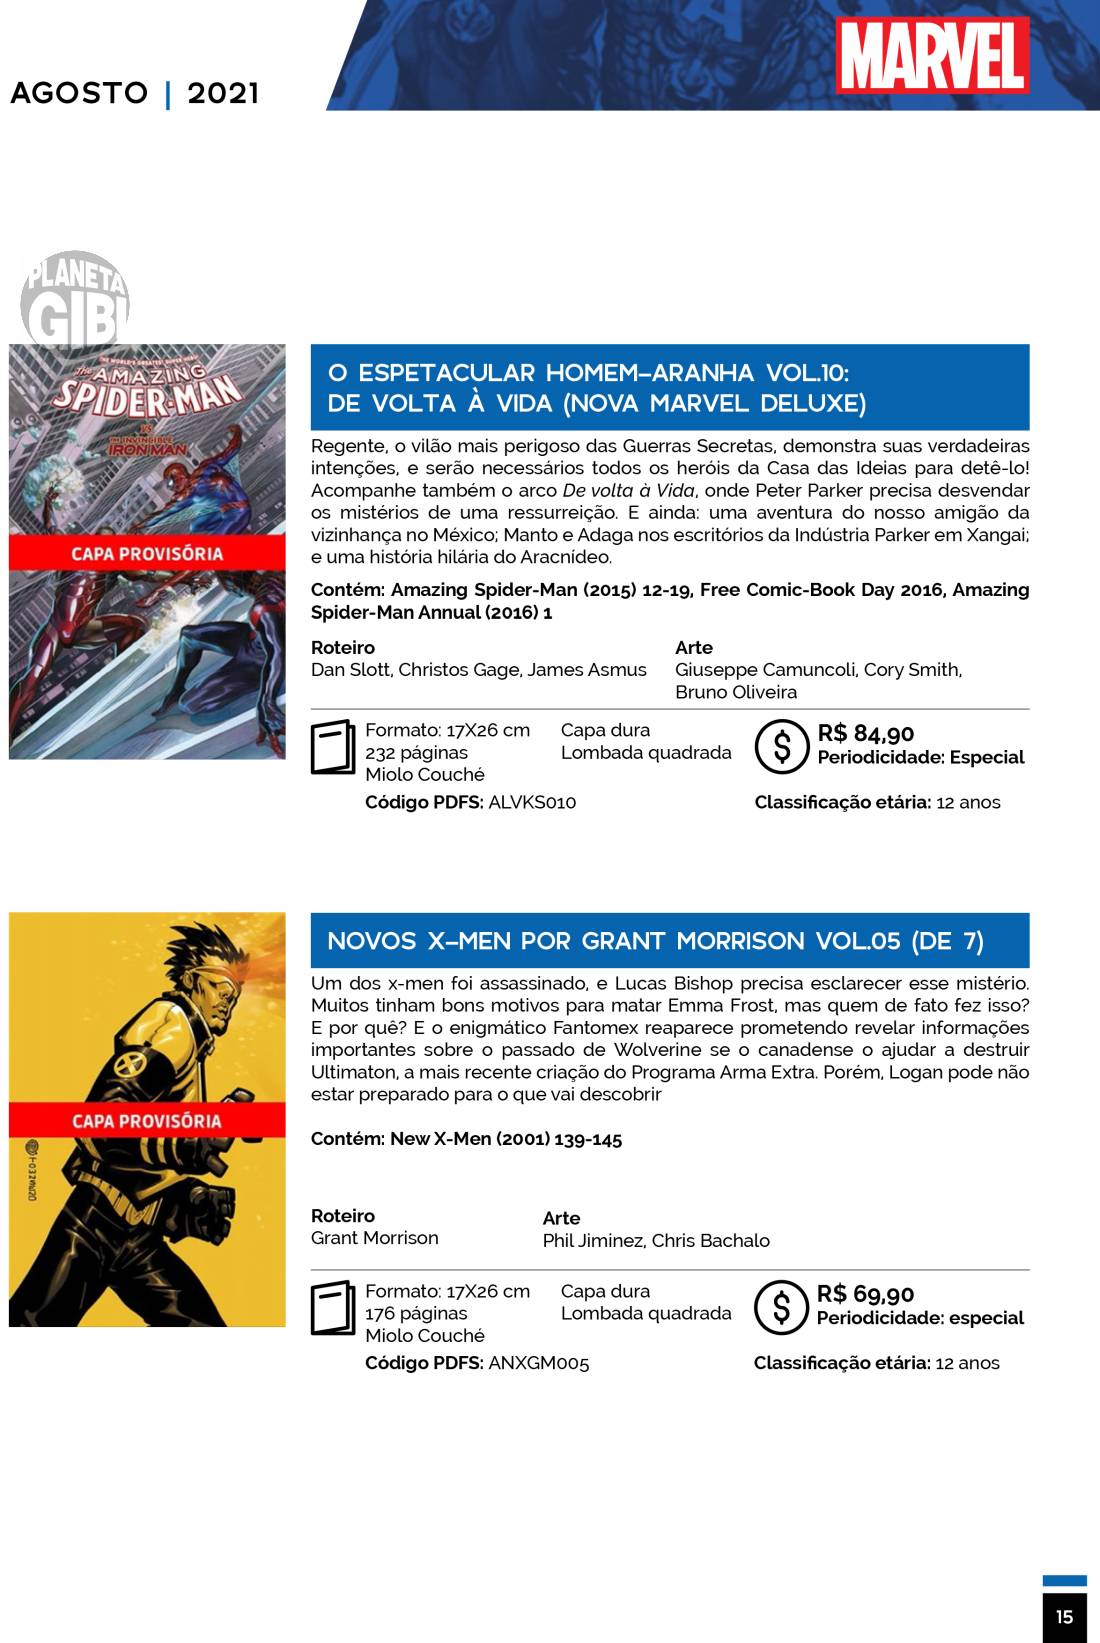 5 - Checklist Marvel/Panini (Julho/2020 - pág.09) - Página 9 Catalogo-Julho-Agosto-15